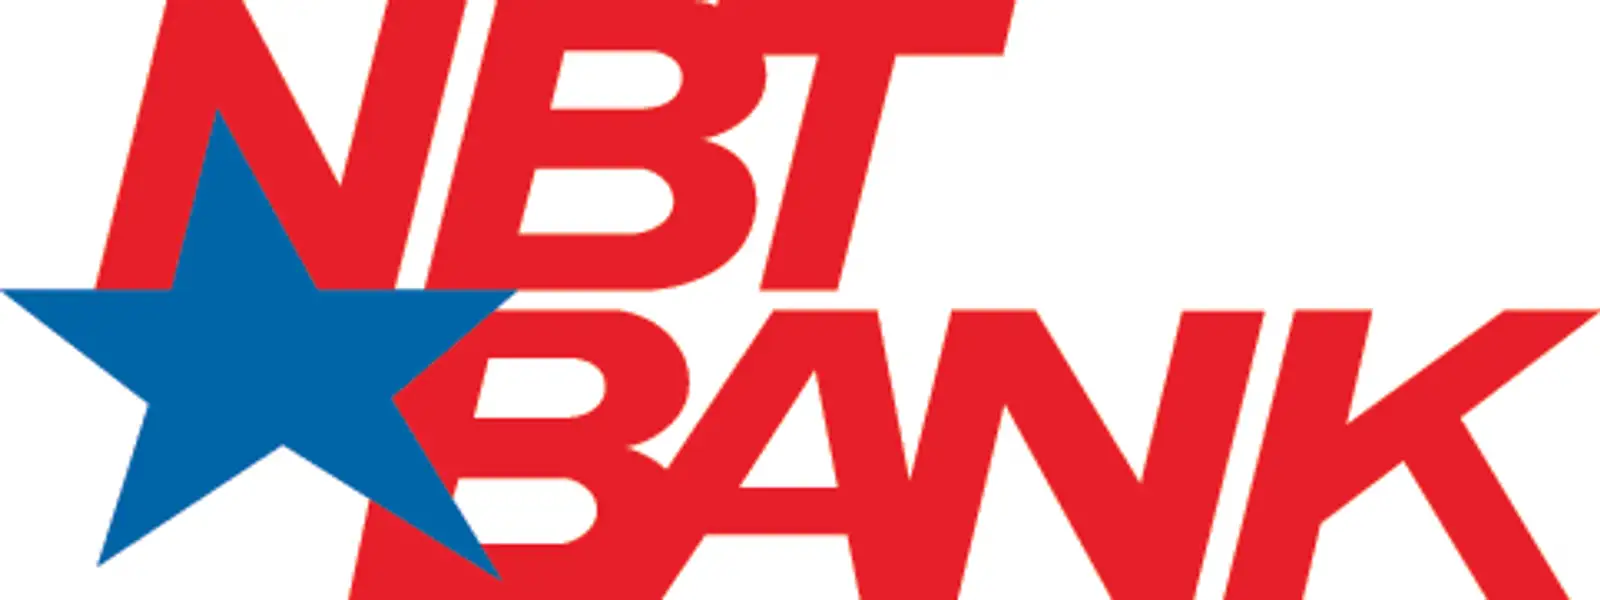 NBT Bank  logo